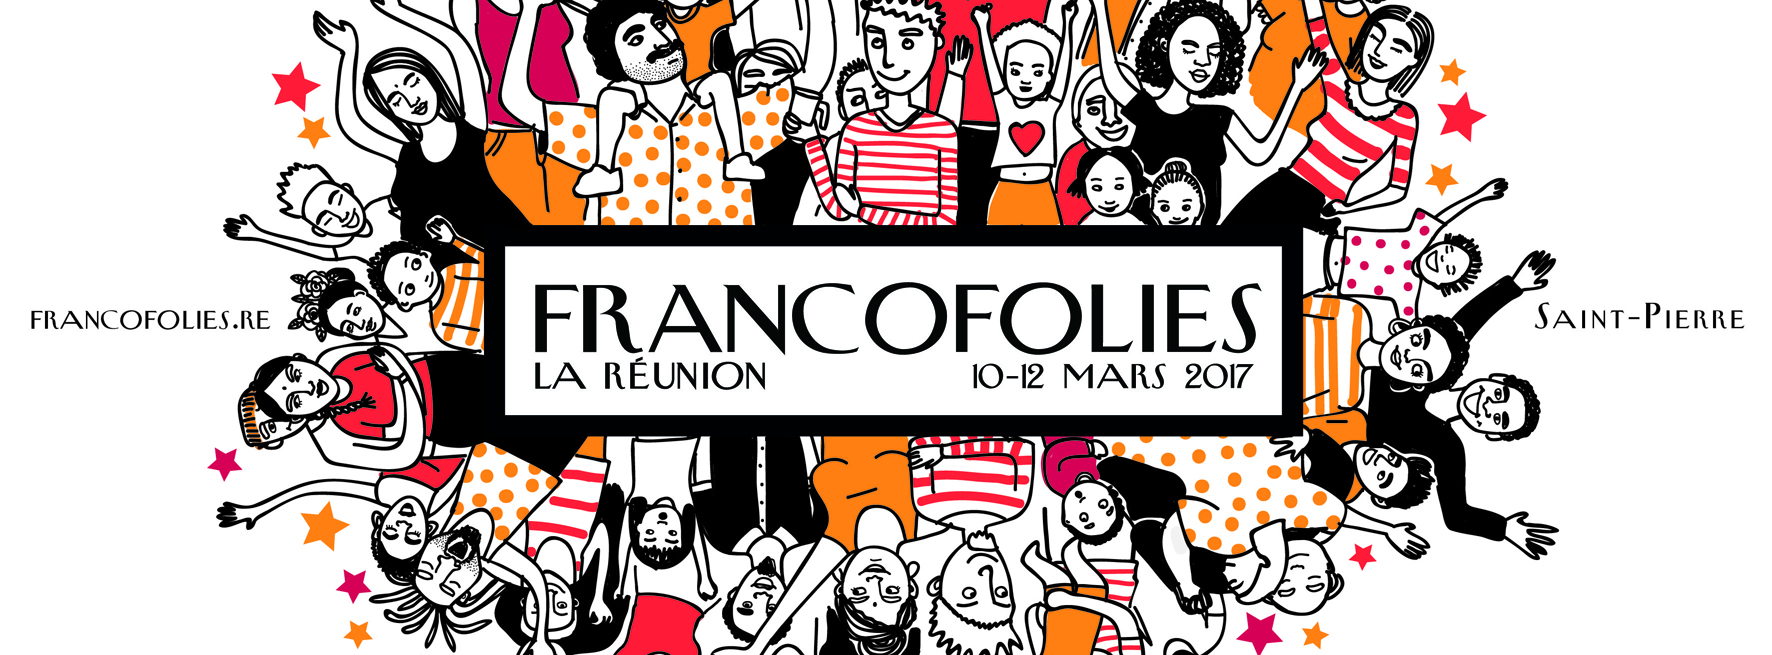 Francofolies à Saint-Pierre : Acte 1 les 10, 11  et 12 mars 2017